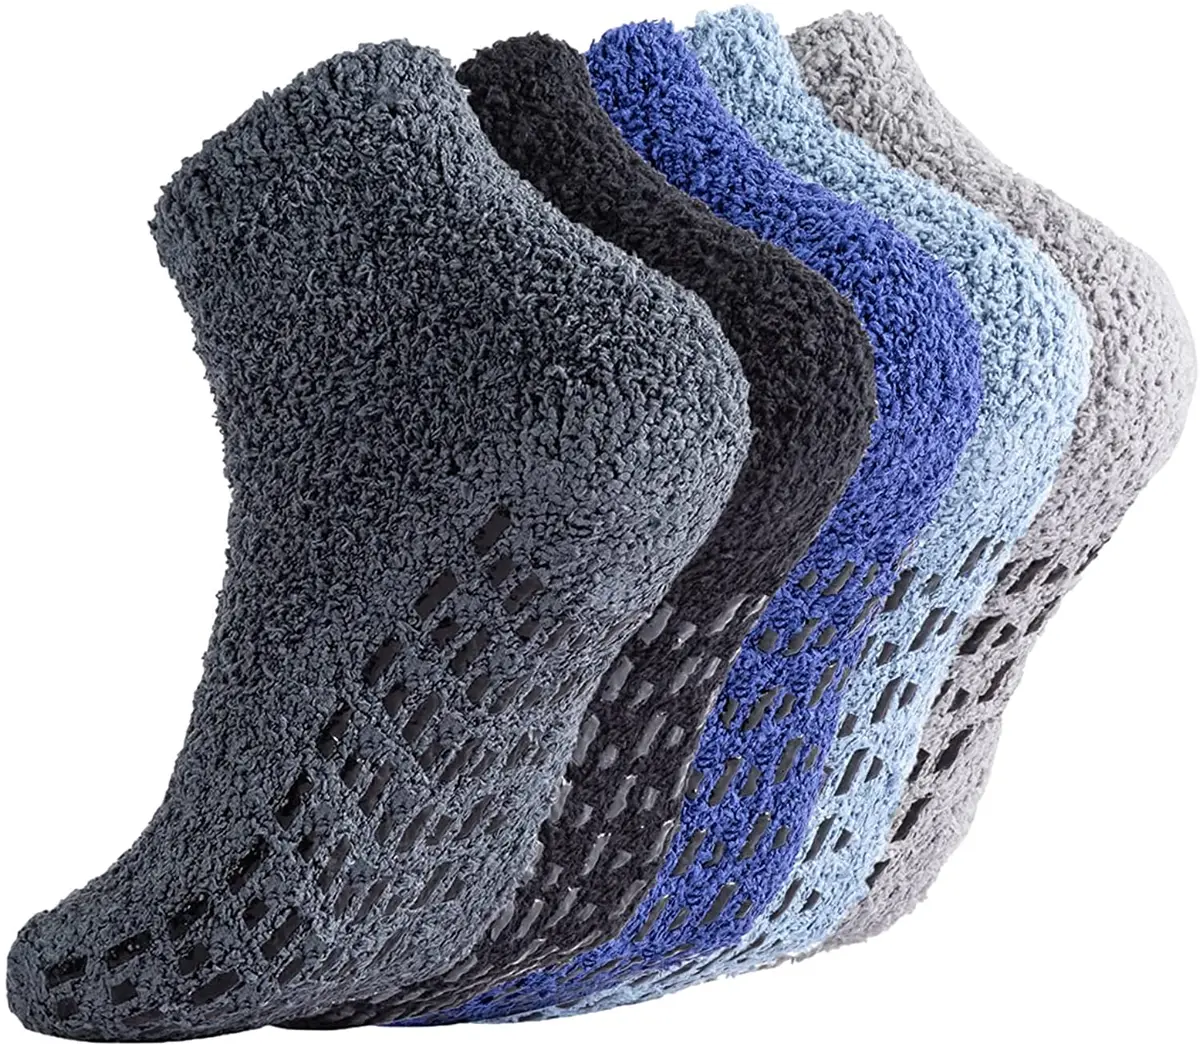 Non Slip Socks Hospital Socks with Grips for Women Grip Socks for